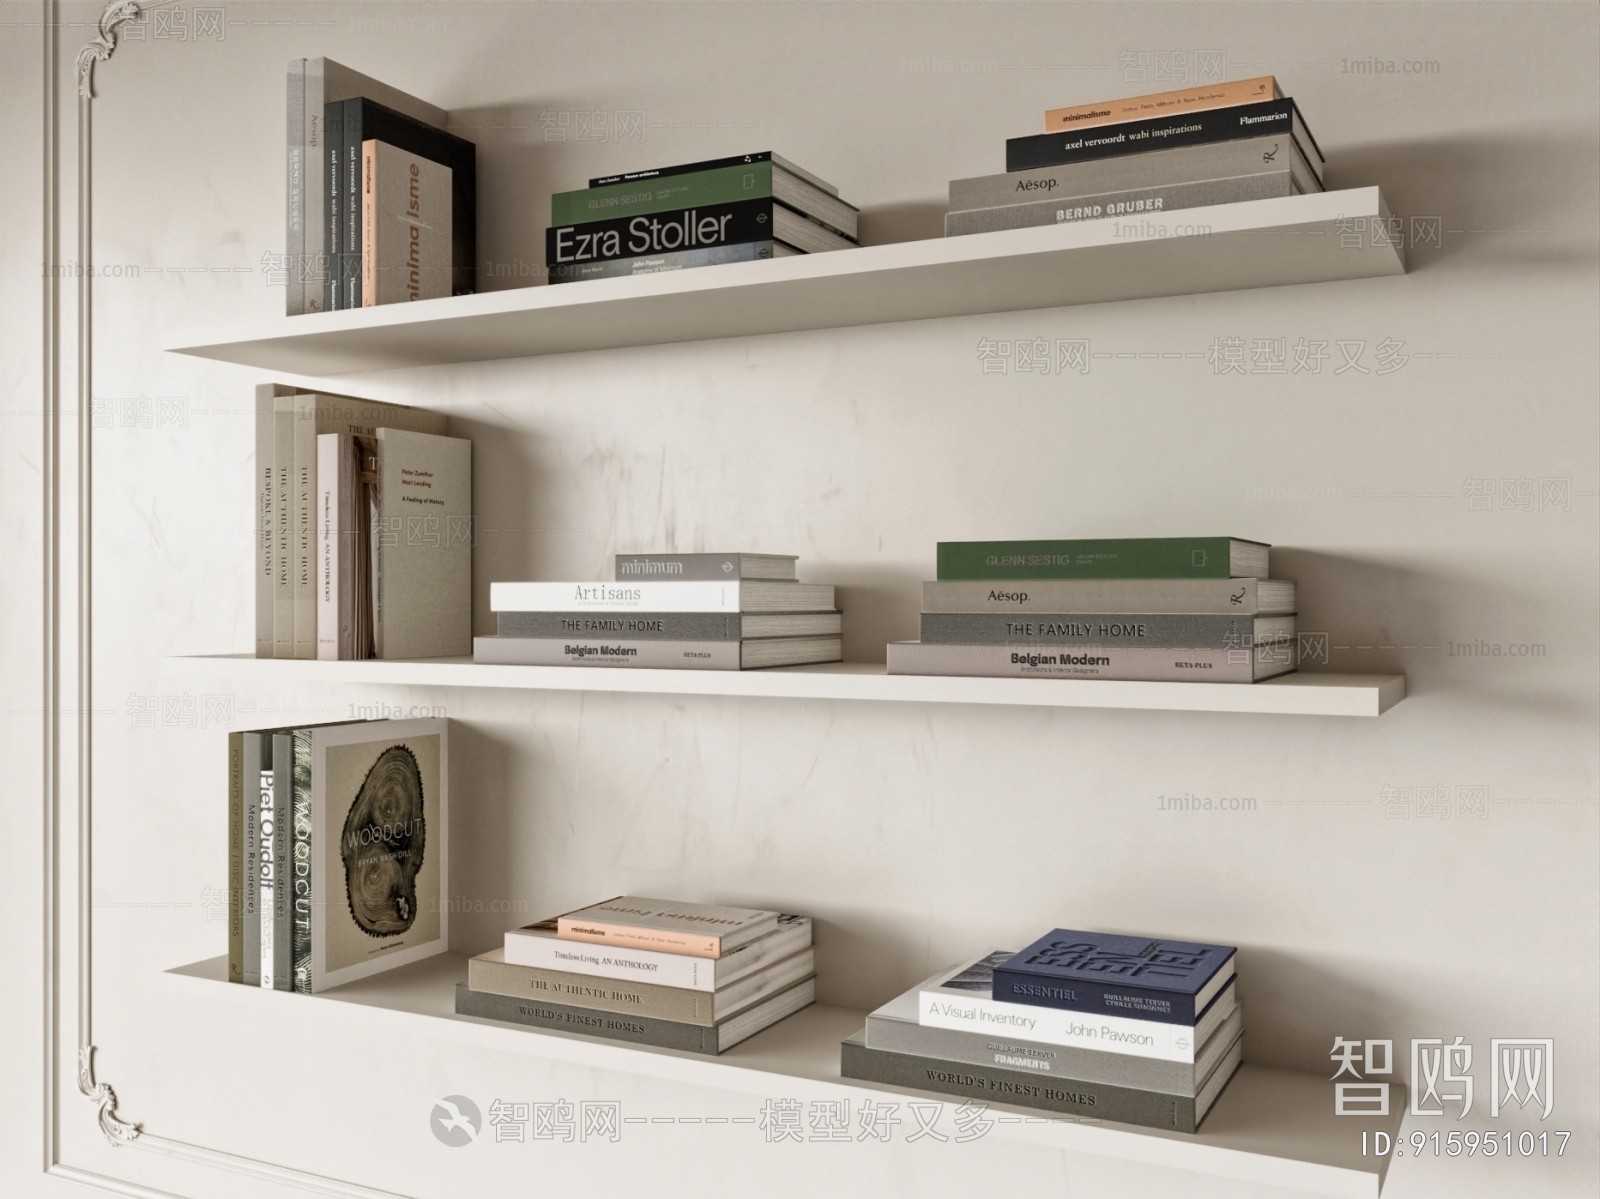 Modern Bookshelf